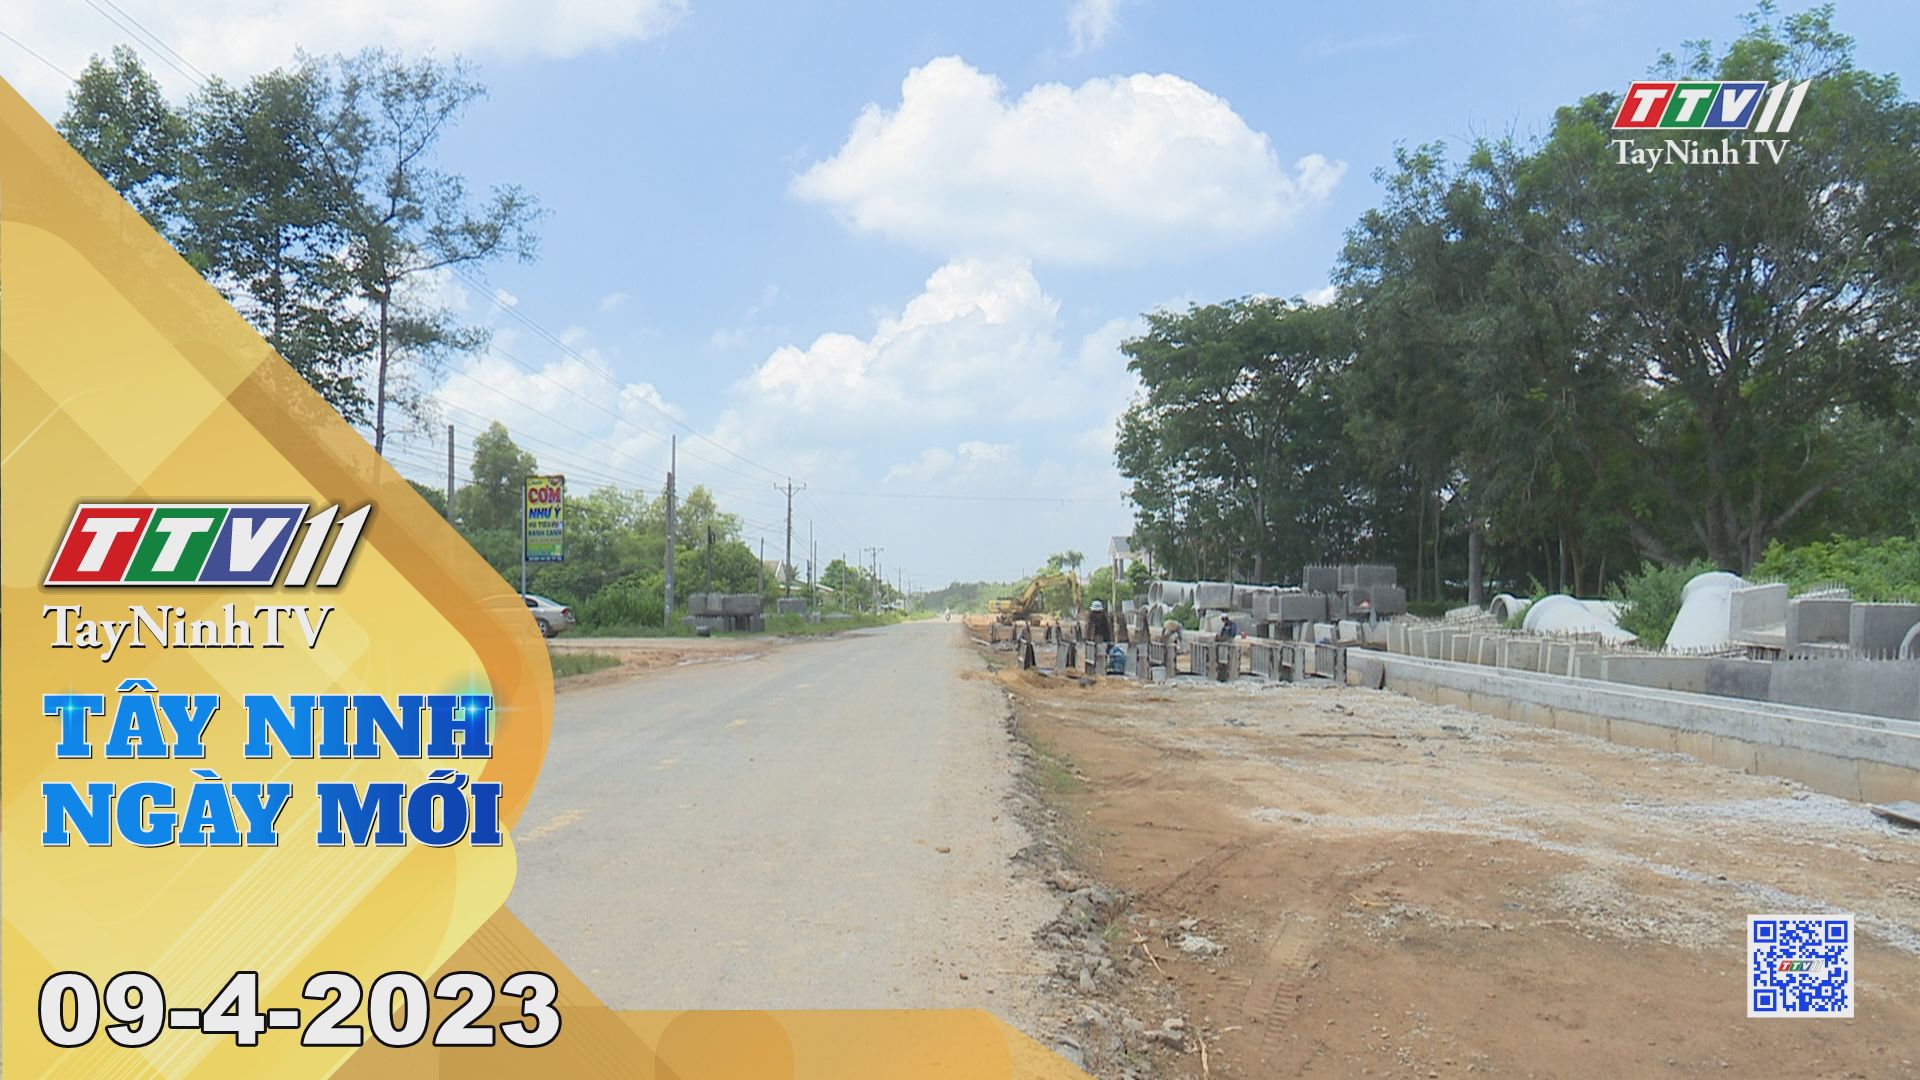 Tây Ninh ngày mới 09-4-2023 | Tin tức hôm nay | TayNinhTV